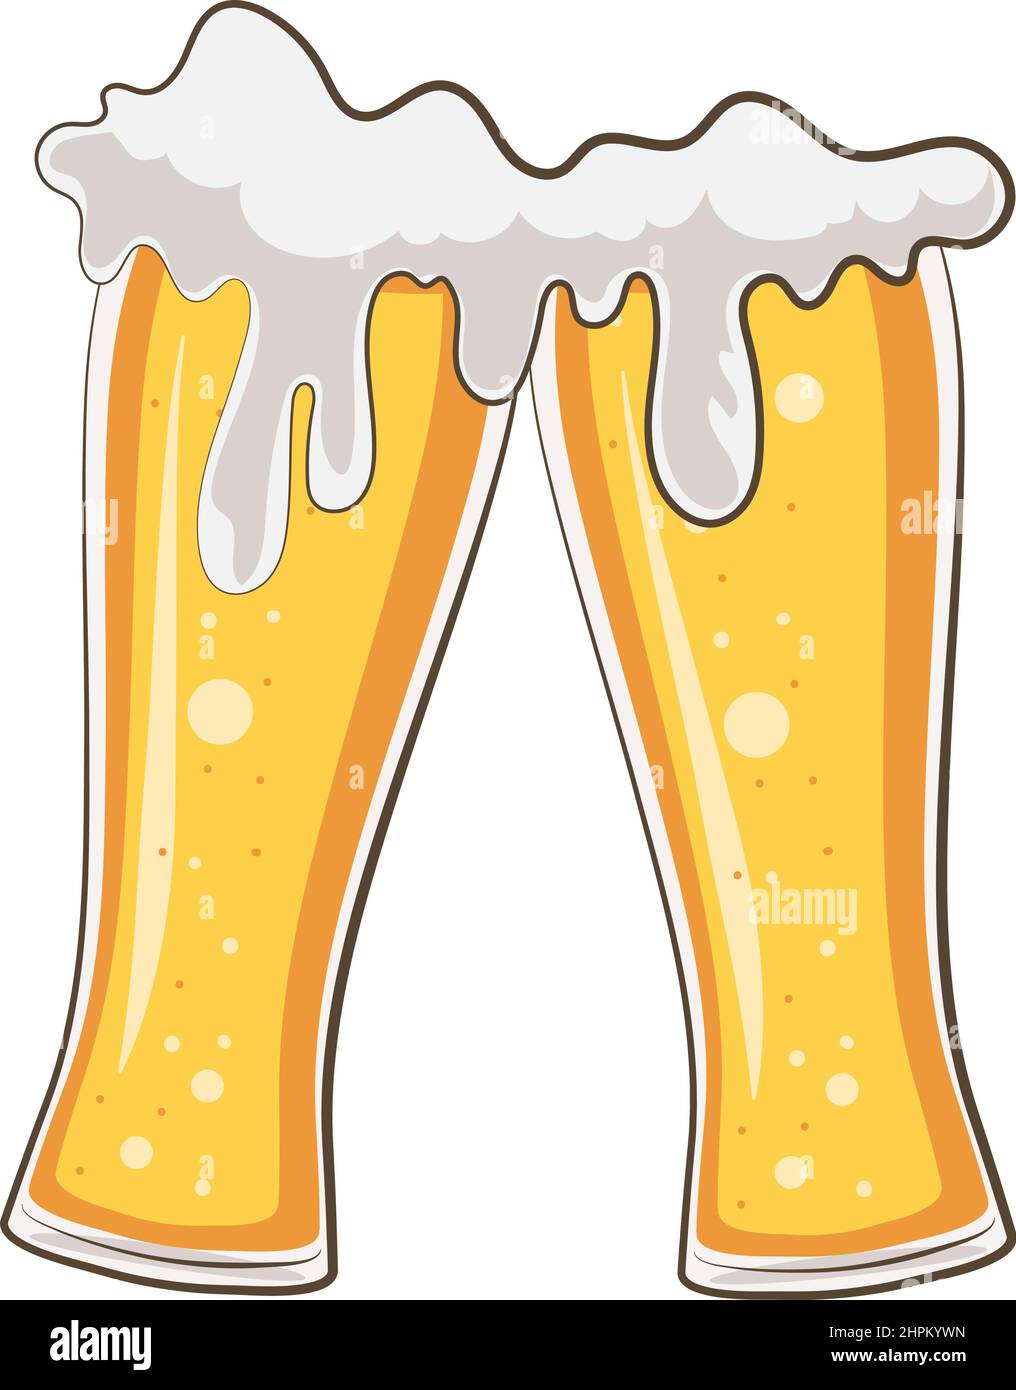 cheers beers glasses Stock Vector